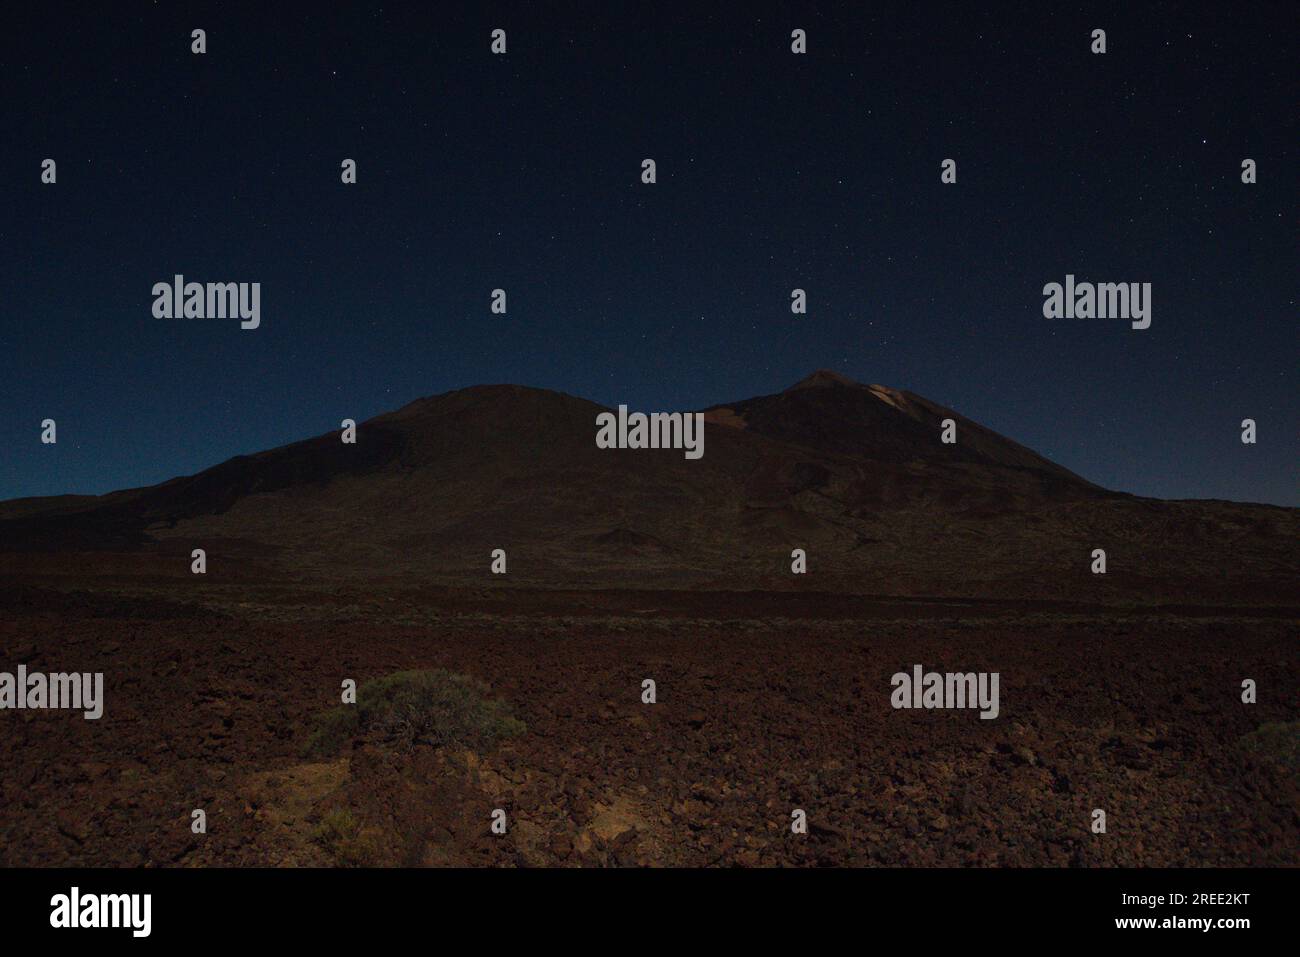 The Teide volcano at night and the sky full of stars.  el volcán del Teide de noche y el cielo repleto de estrellas Stock Photo